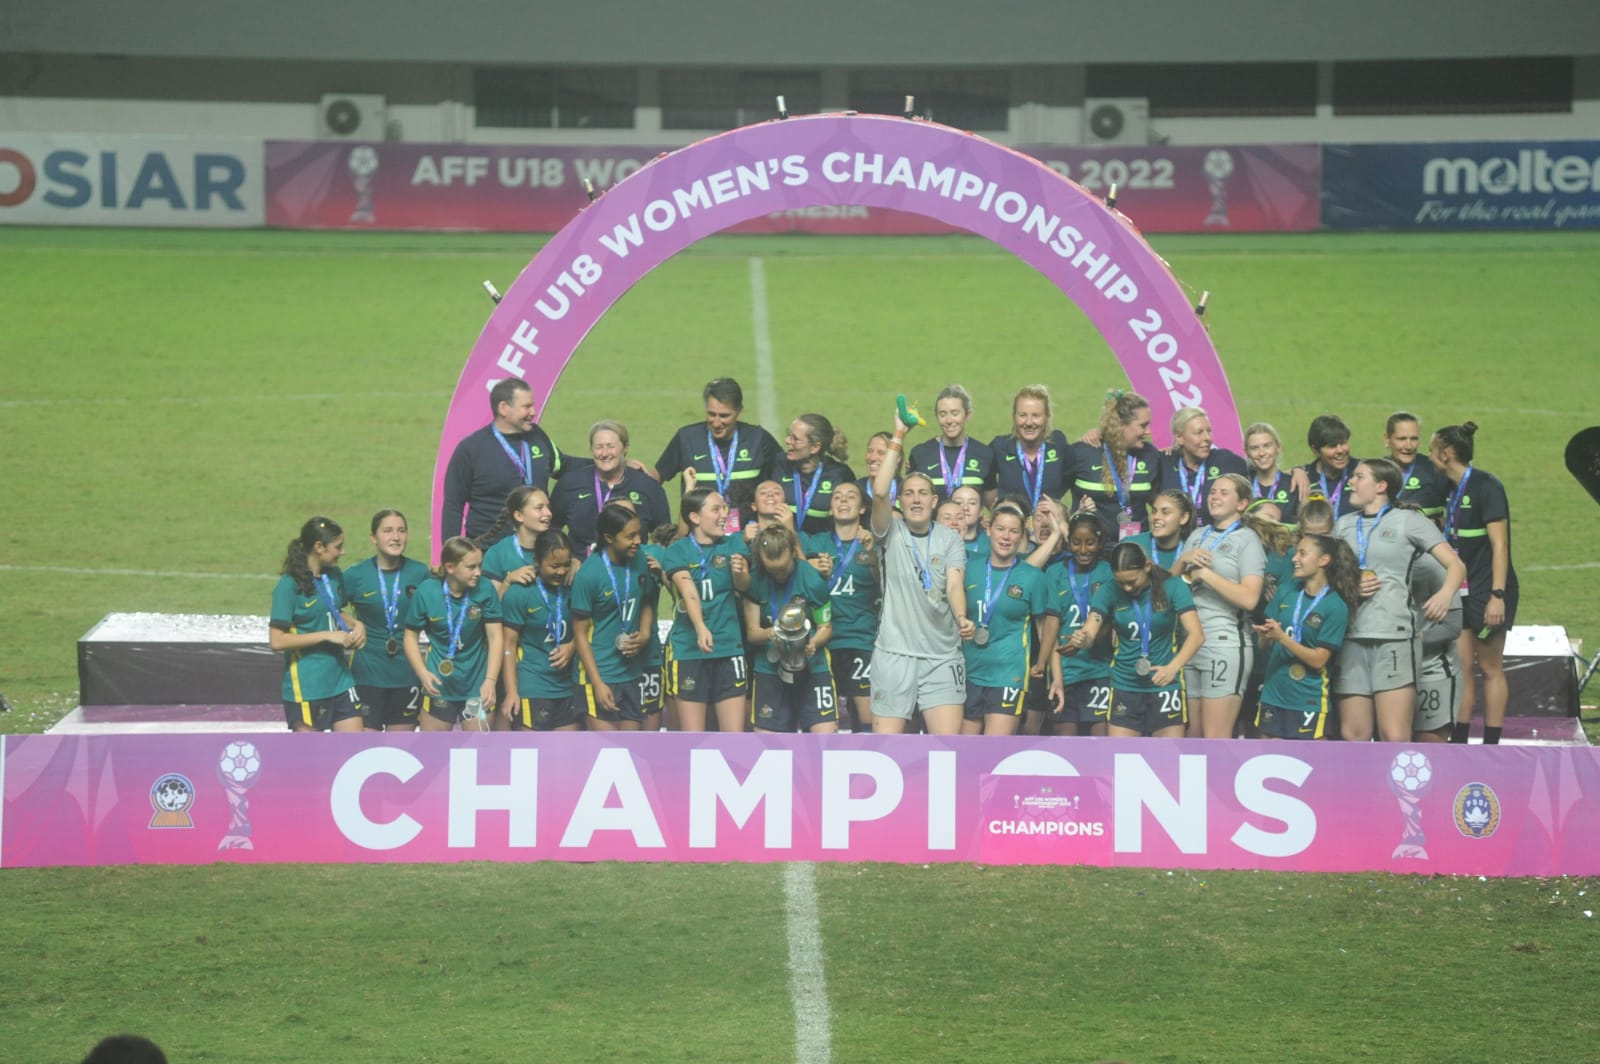 Kalahkan Vietnam 2-0, Australia Juara AFF U-18 Wanita   